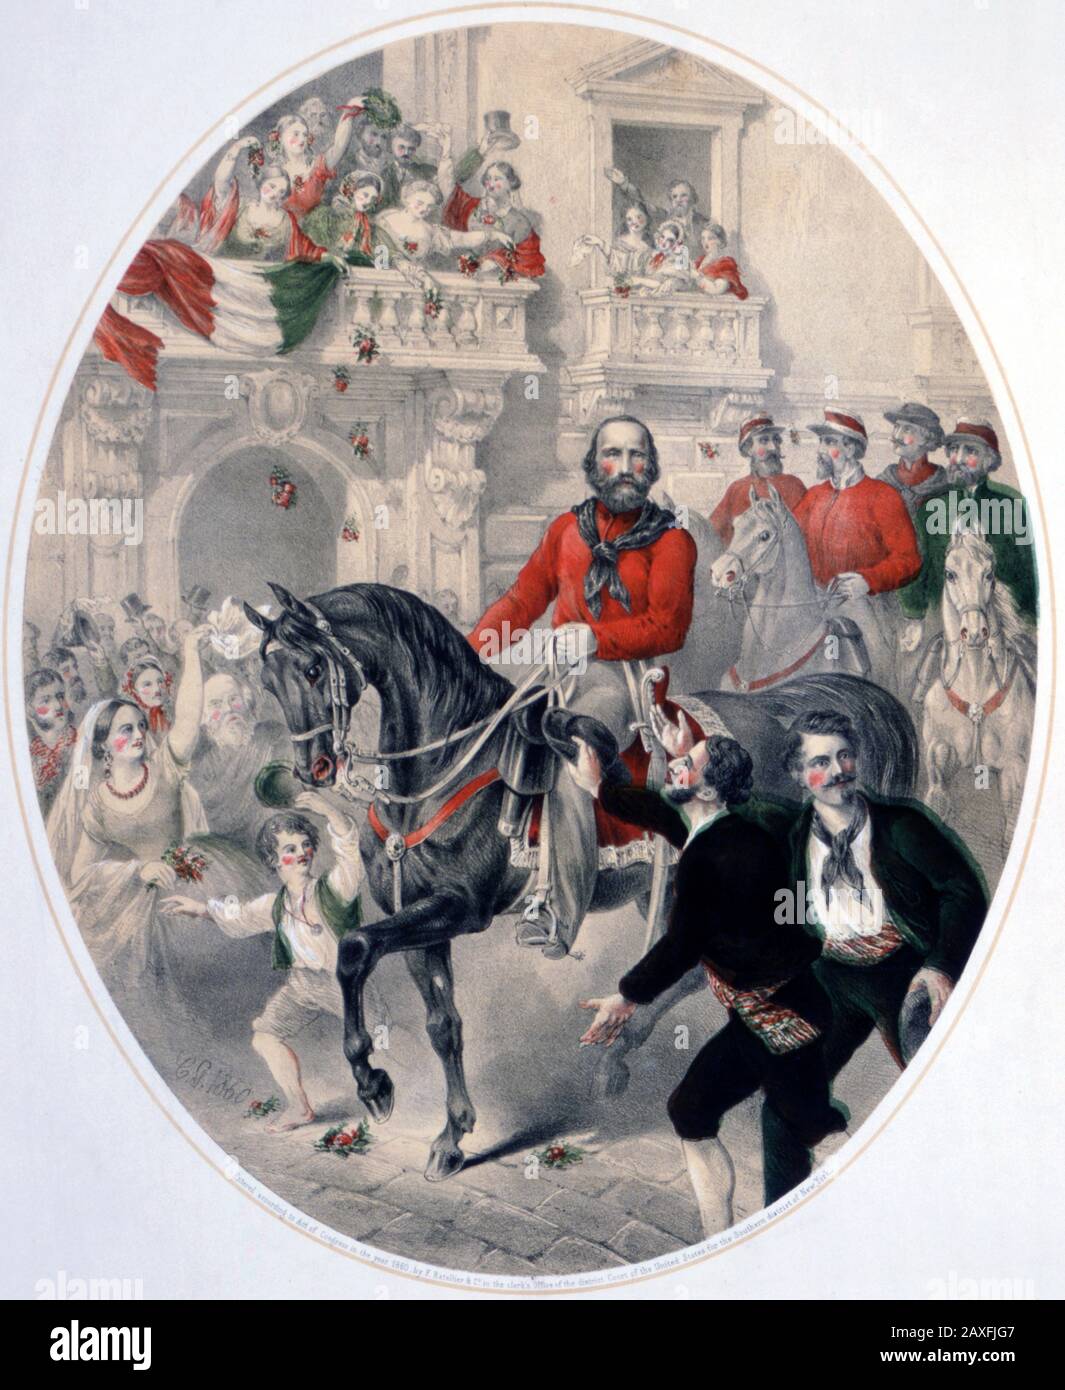 1860 : The italian politician GIUSEPPE GARIBALDI ( Nizza 1807 - Caprera 1882 ) enter in NAPOLI , Italy . Engraving by Ratellier and George Ward Nichols publishing , New York , USA - POLITICO - POLITICA - POLITIC  - Unita' d' ITALIA - Risorgimento  - foto storiche - foto storica - HISTORY - incisione - portrait - ritratto - beard - barba - Naples  - horse - cavallo - ingresso trionfale © Archivio GBB / Agenzia Stock Photo